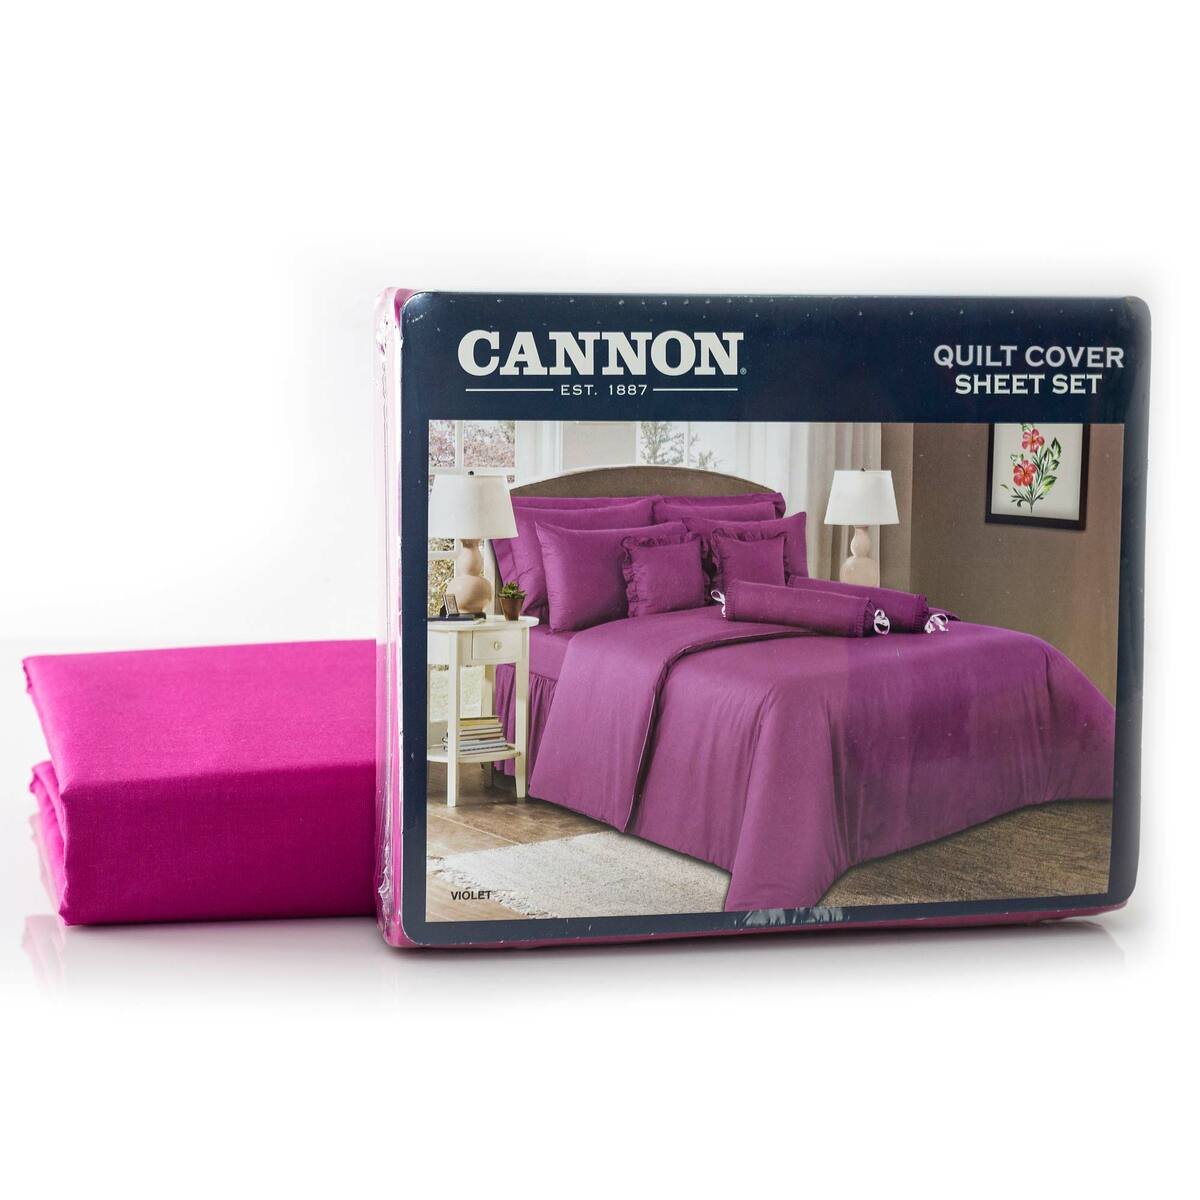 Cannon Quilt Cover Plain Single 3pc Set Violet